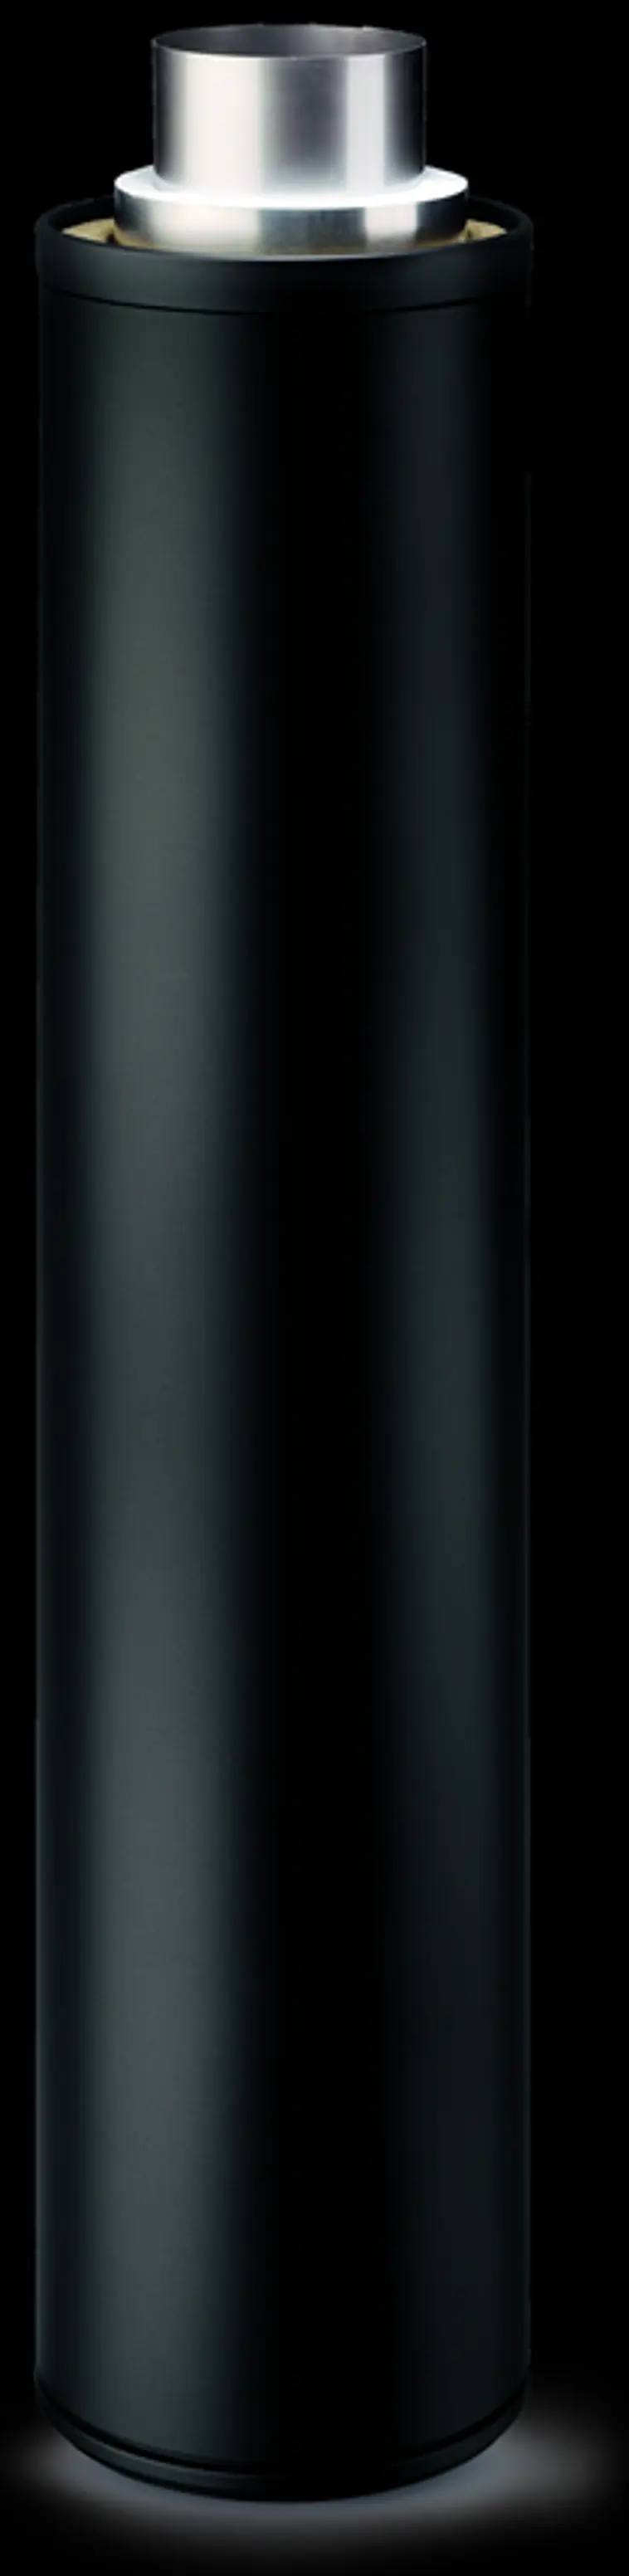 Härmä Air piippu Siro unique mattamusta, piipun pituus 3660 mm | Prisma  verkkokauppa